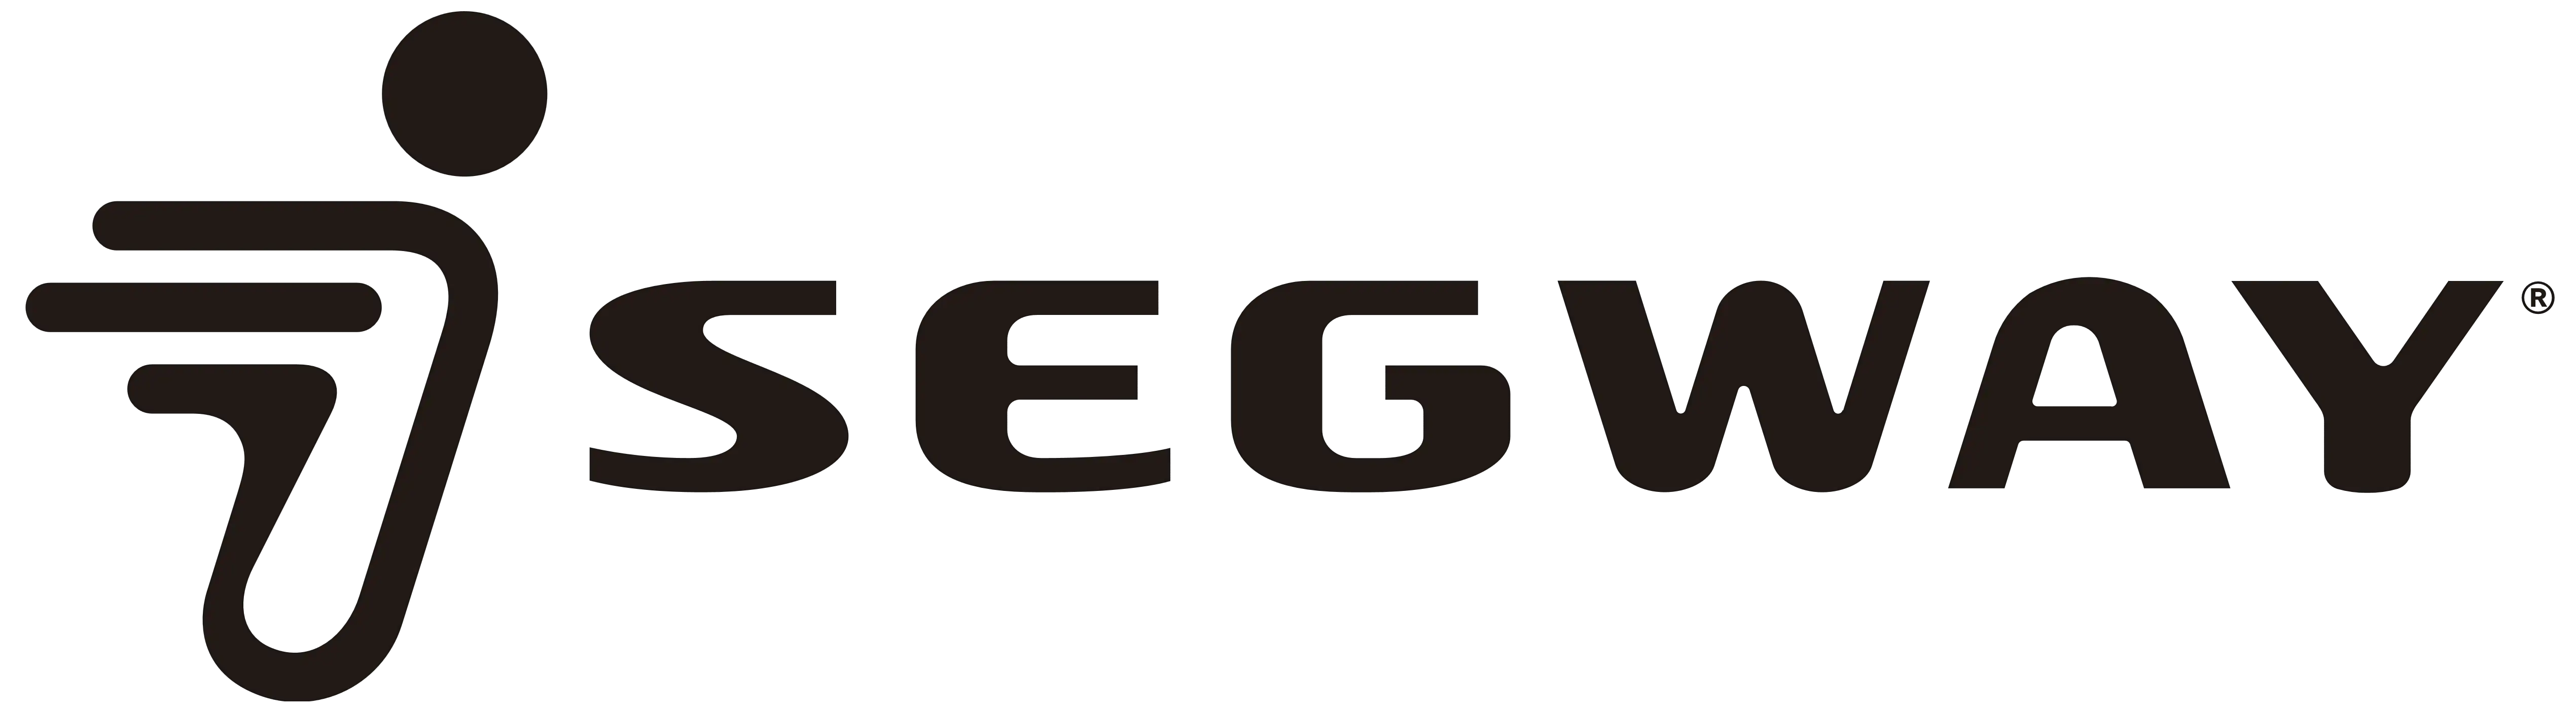 logo segway